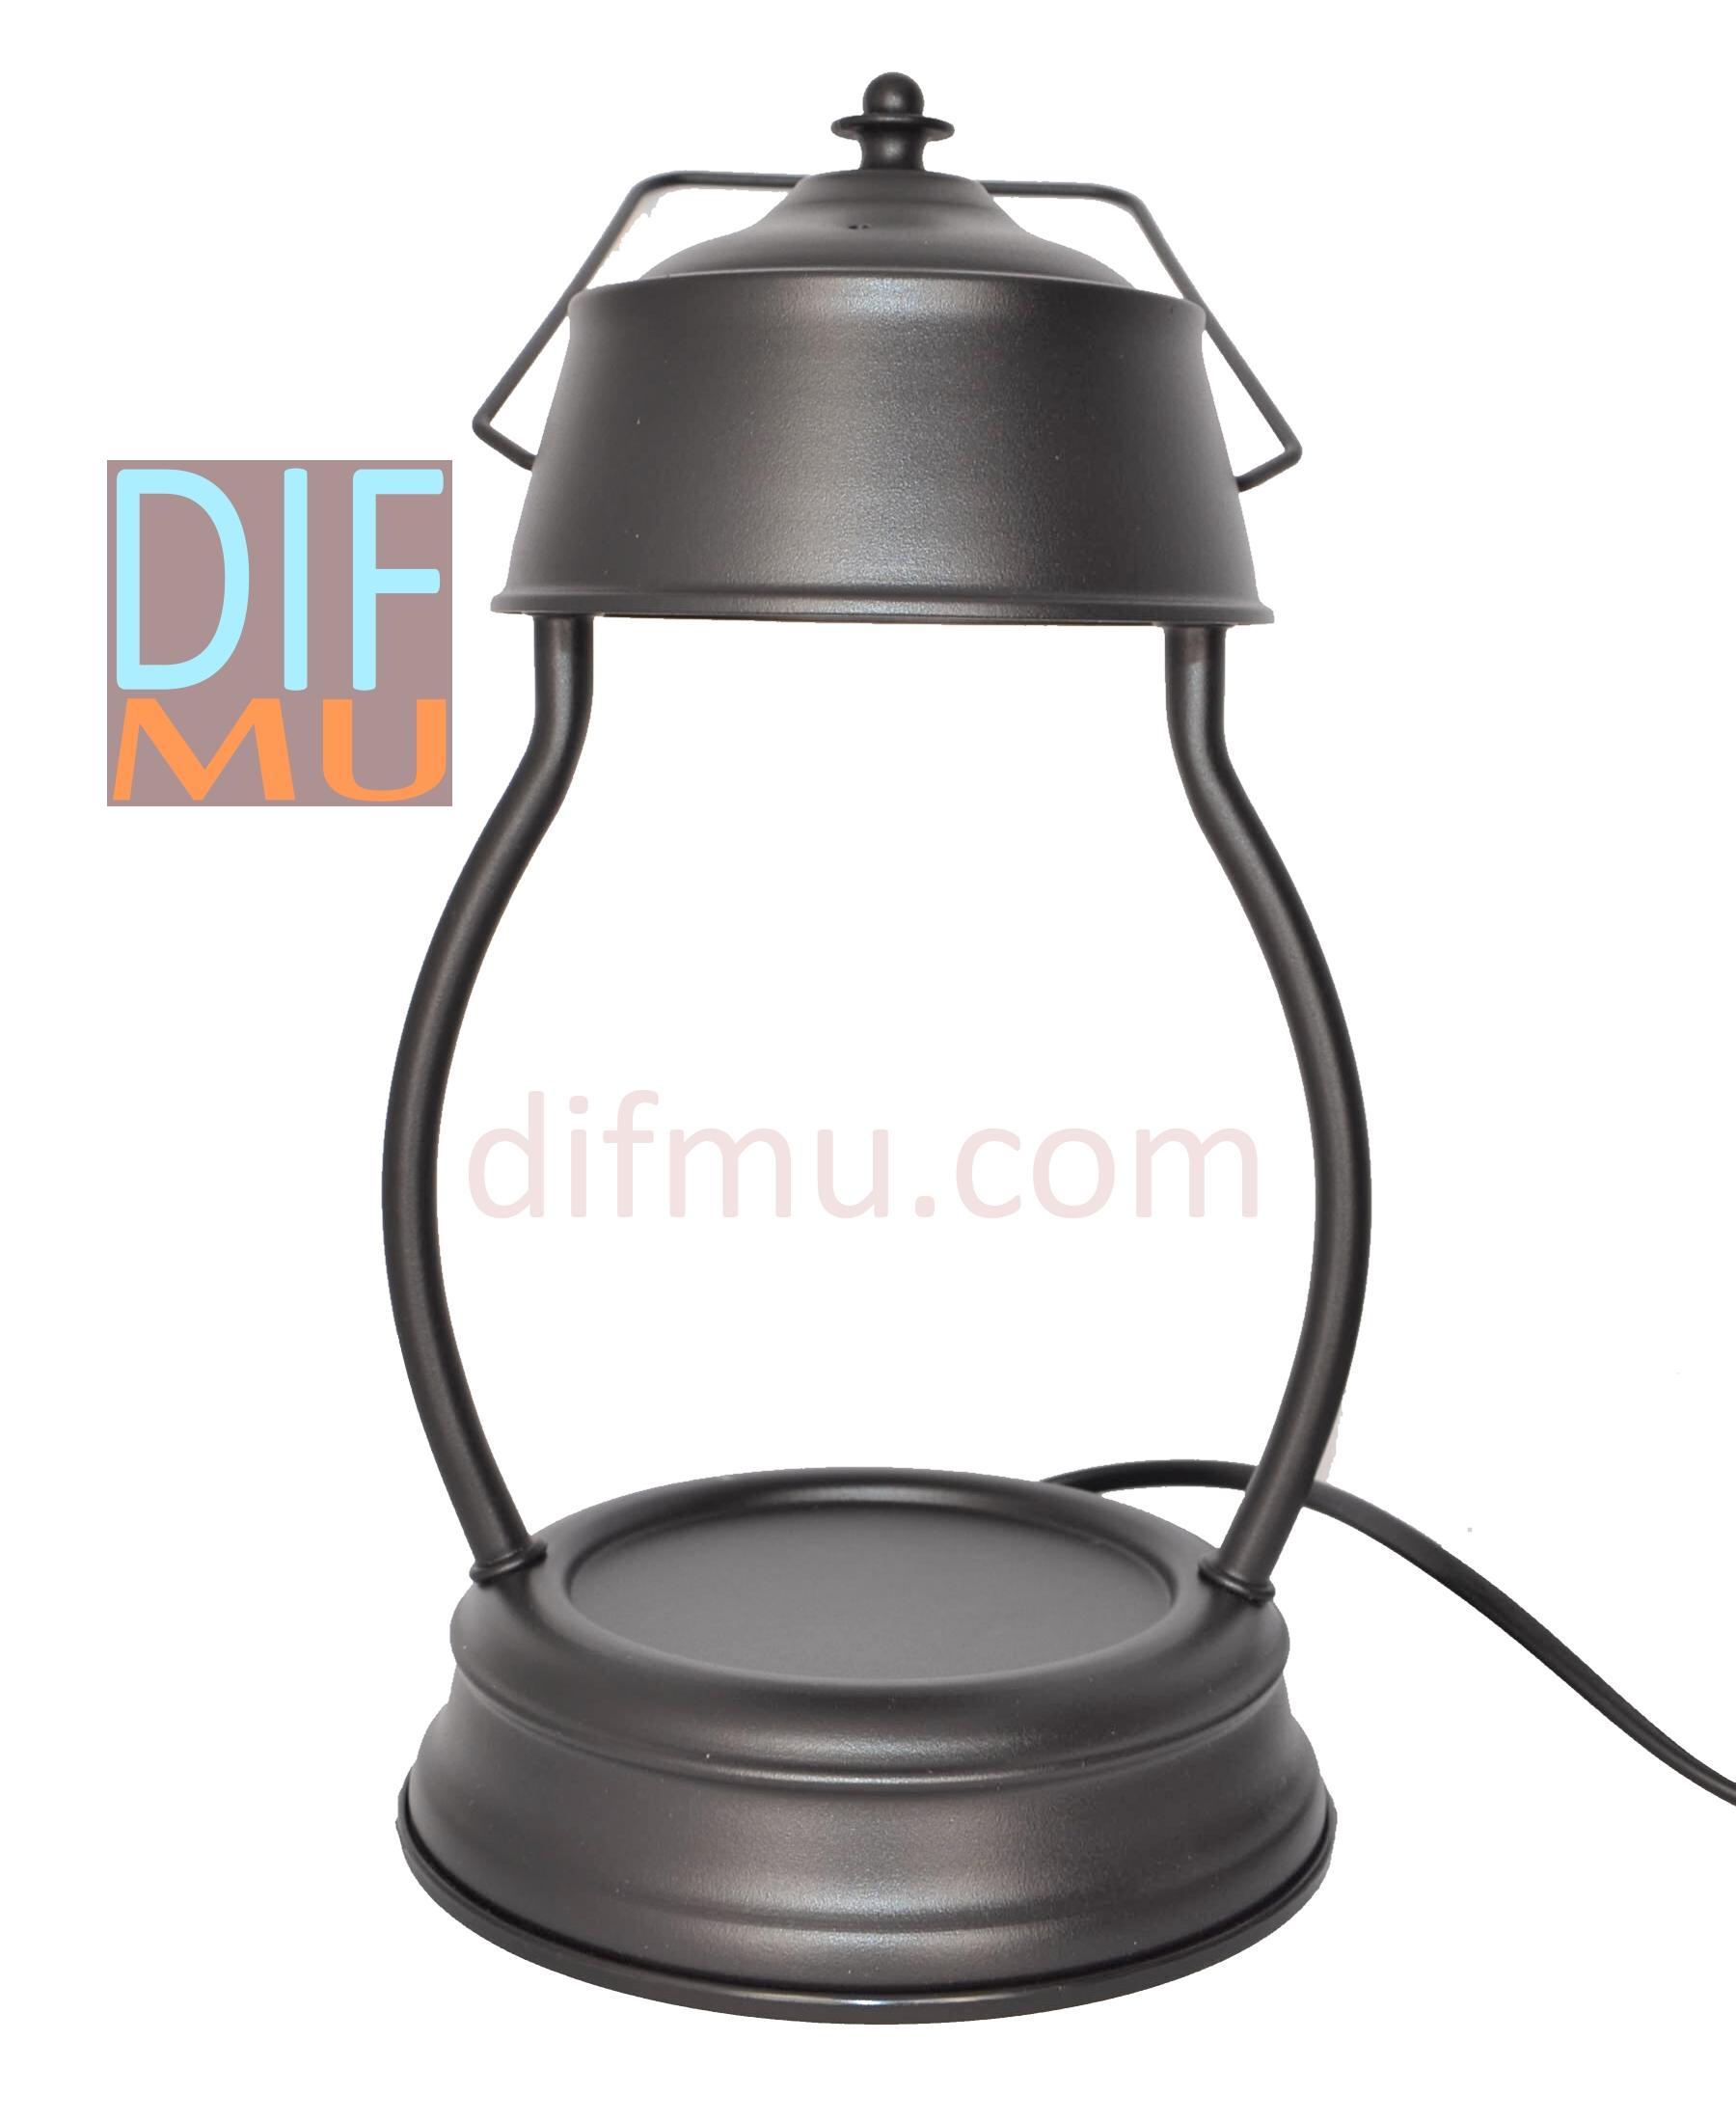 Lampe chauffante pour bougie LANTERNE NOIR à ampoule halogène - Difmu